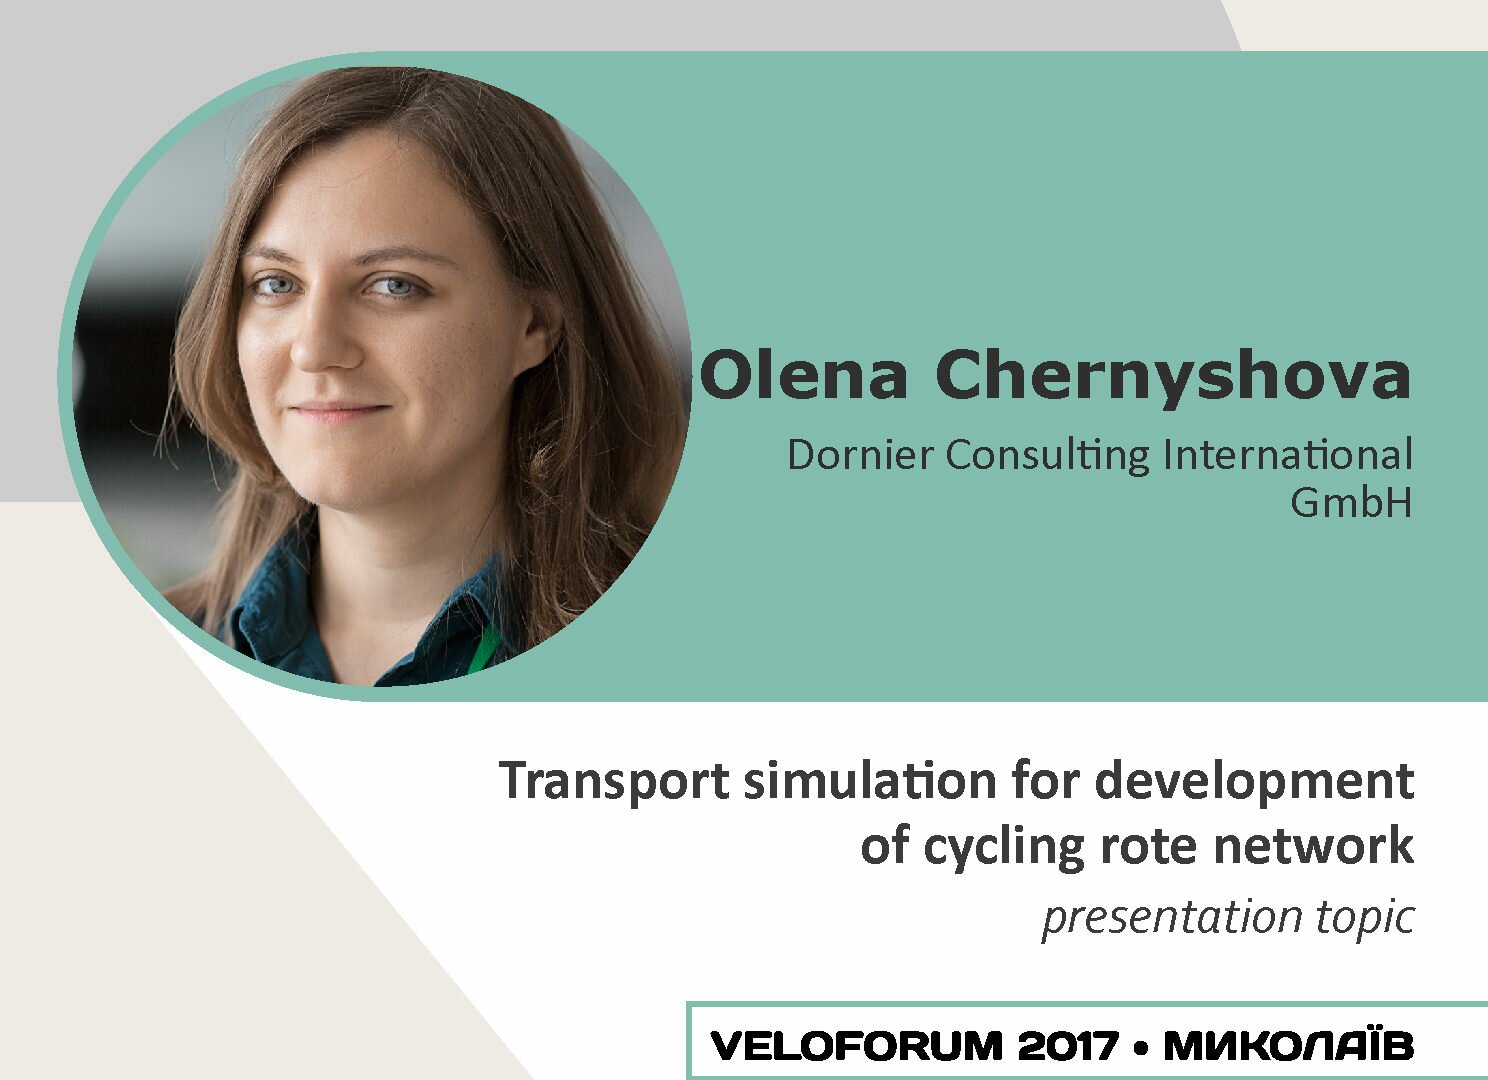 Veloforum 2017 Speakers. Olena Chernyshova